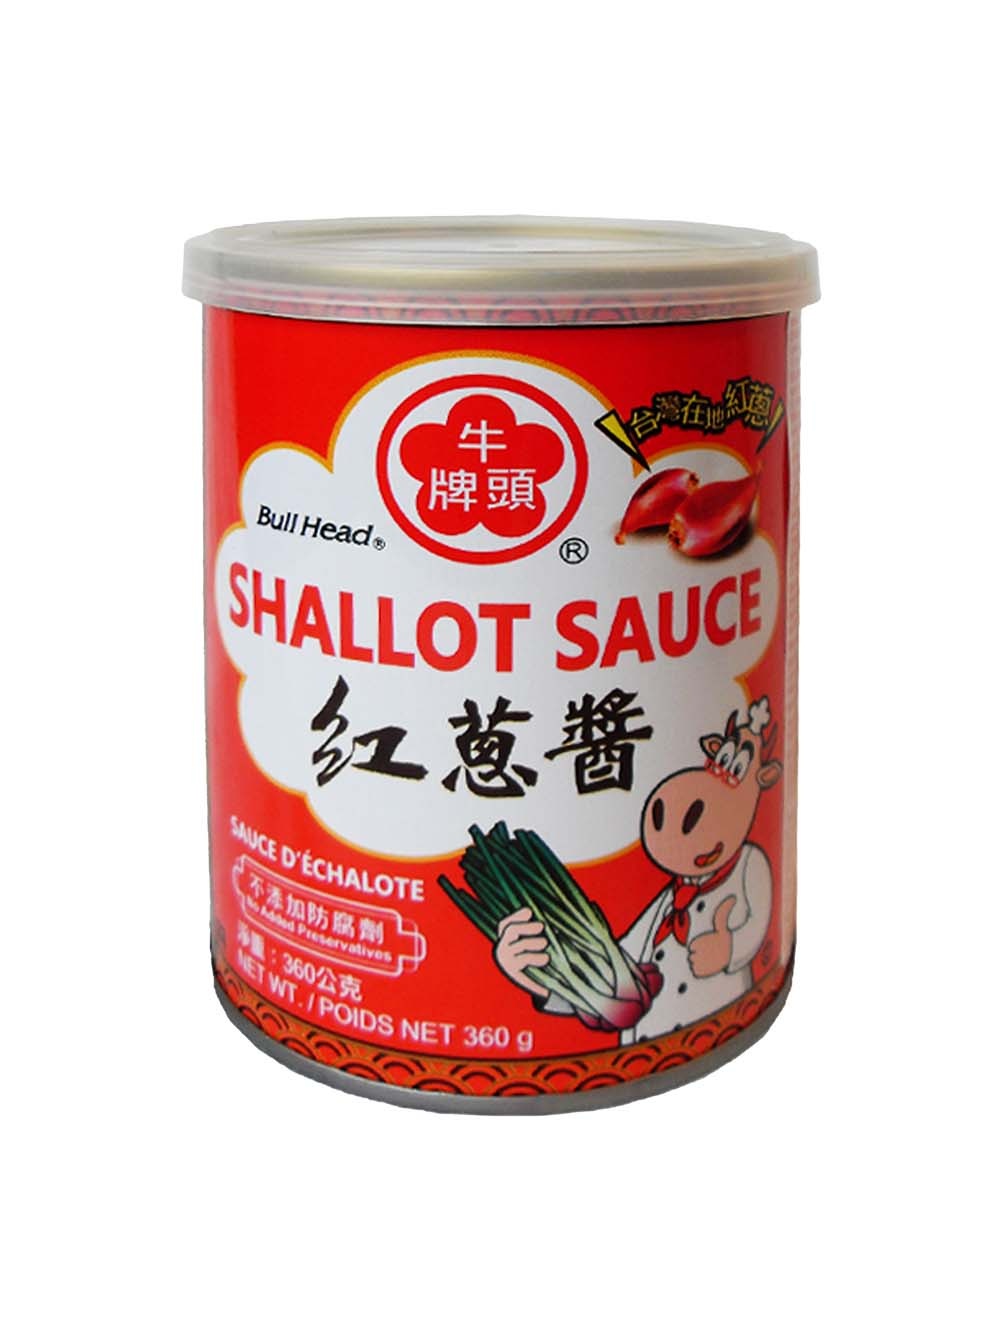 Bullhead Shallot Sauce, 360g - Tjin's Toko